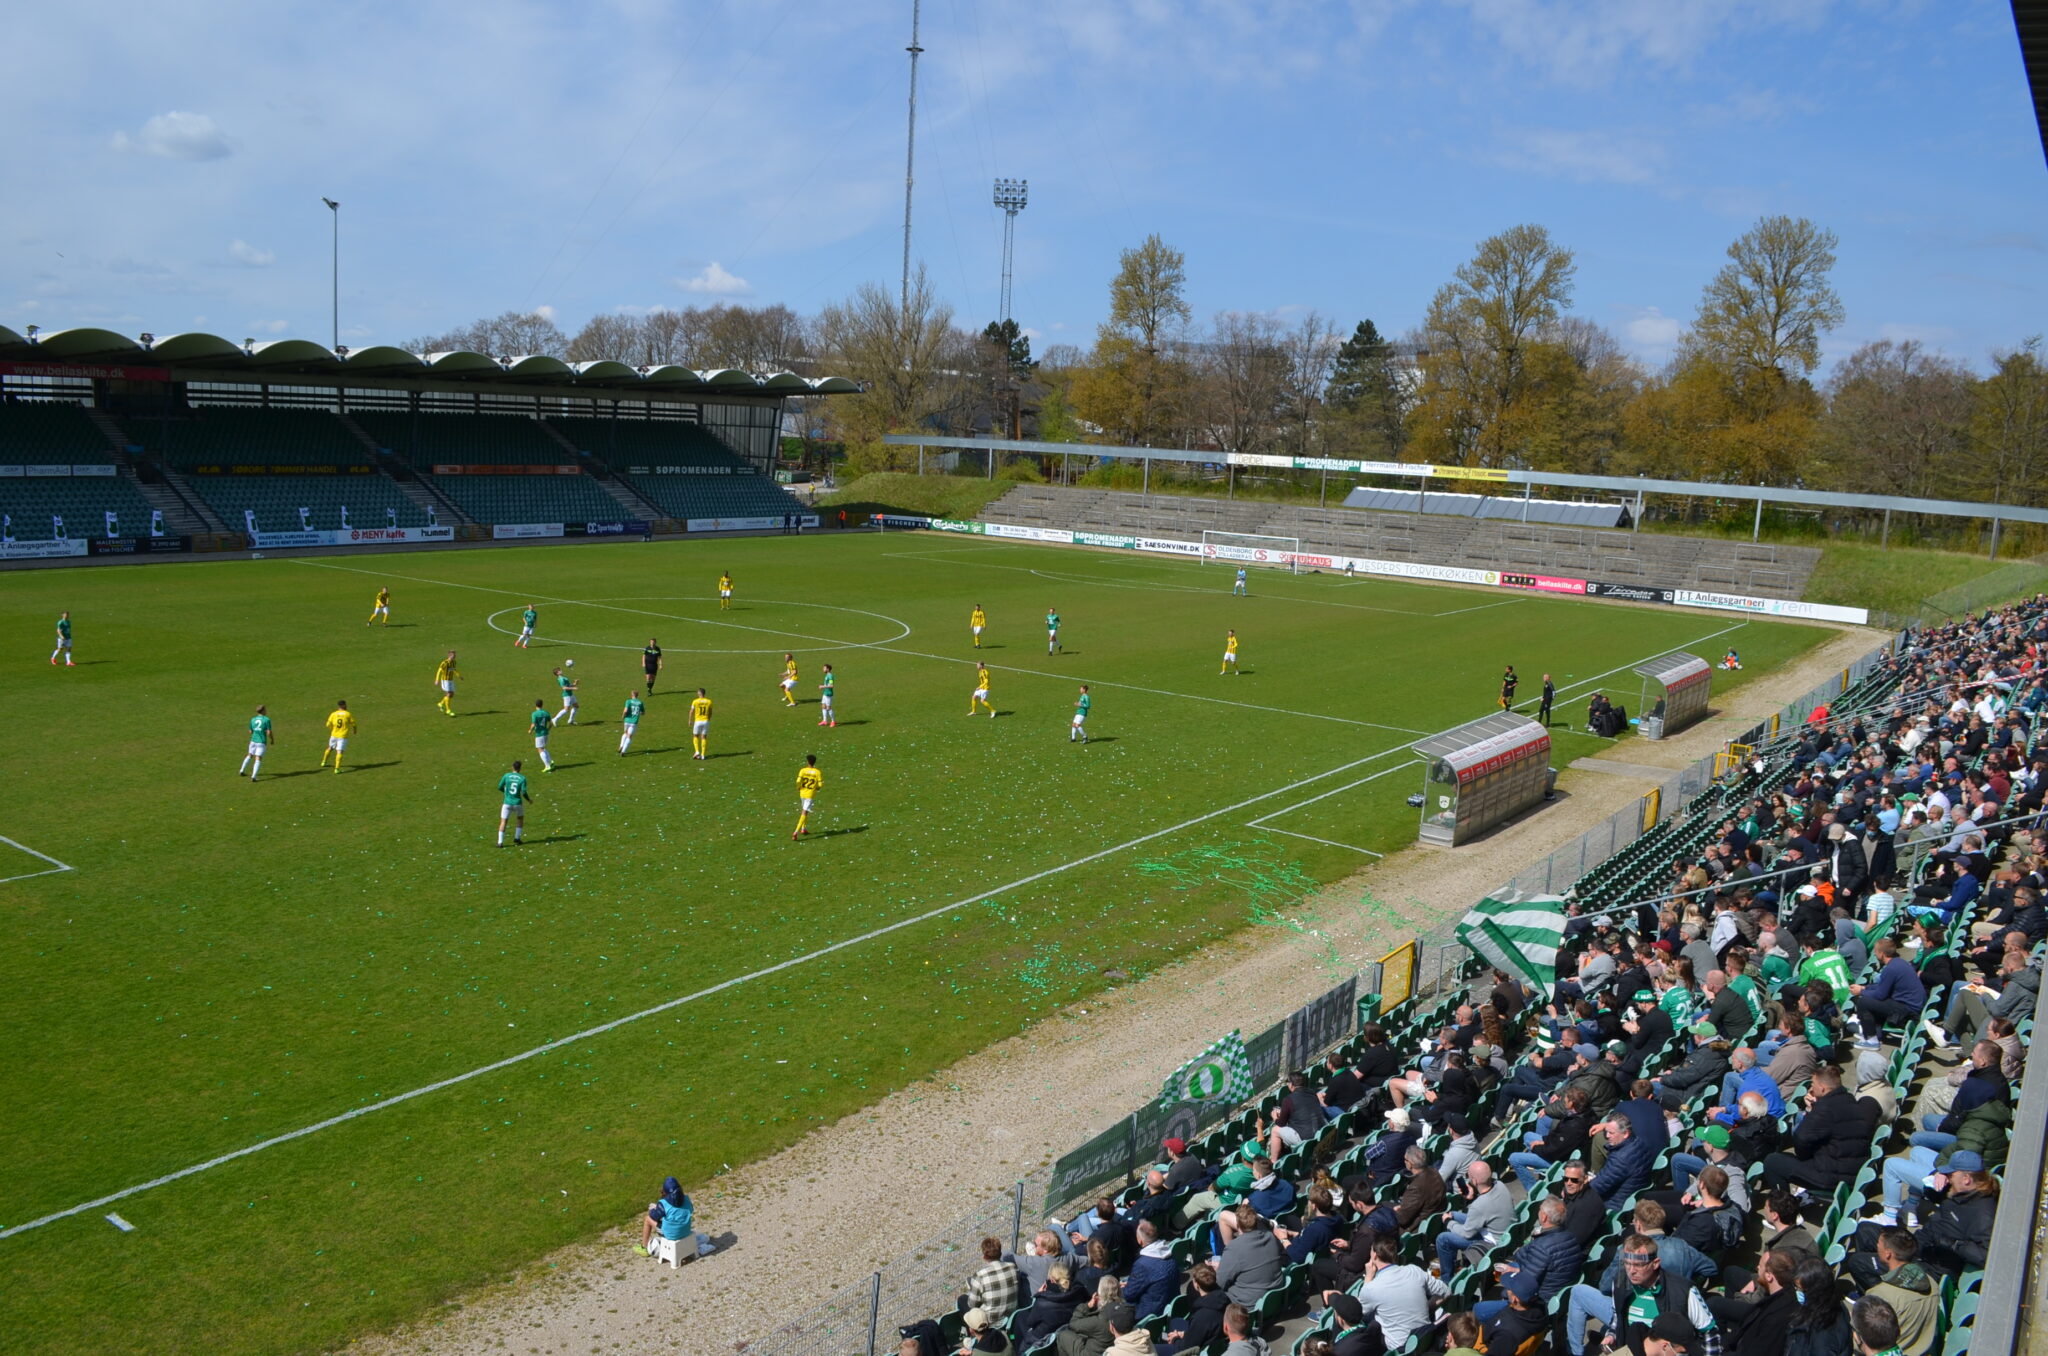 Tilskuere og fans var tilbage på Gladsaxe Stadion efter den lange Corona nedlukning, da AB tog imod Brønshøj i 2. division. (Foto: DTU)